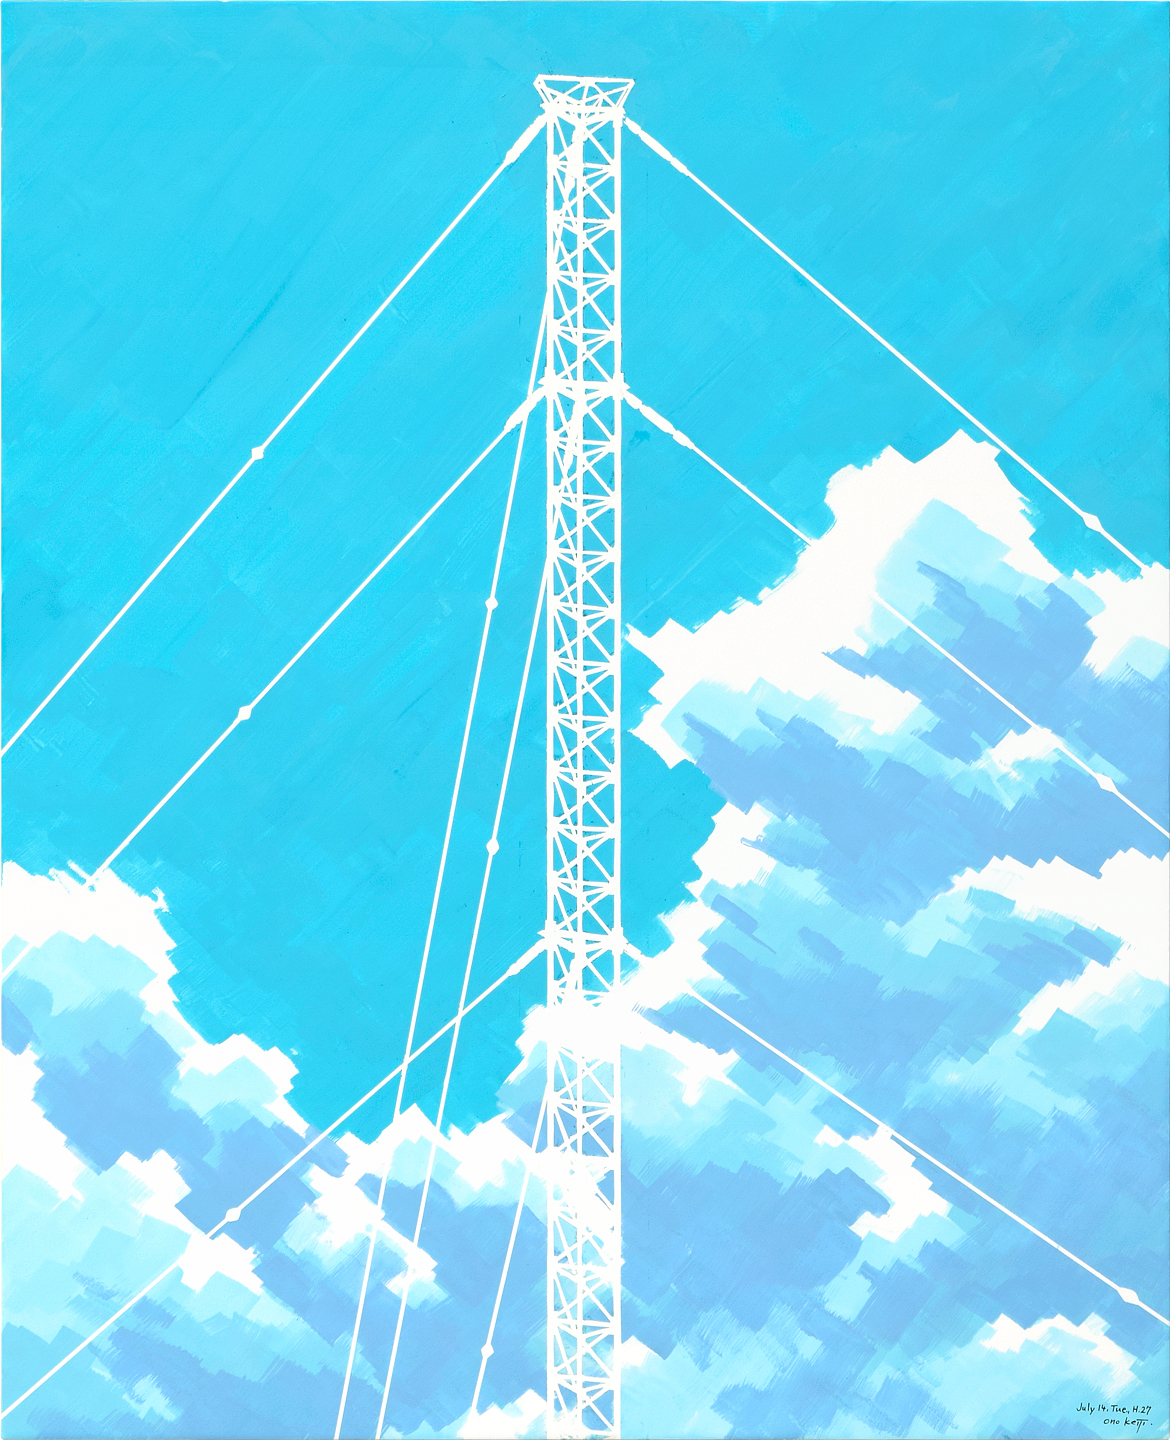 illustration, LORAN C, blue sky | イラスト, 夏の雲と青空にそびえるロランCの電波塔